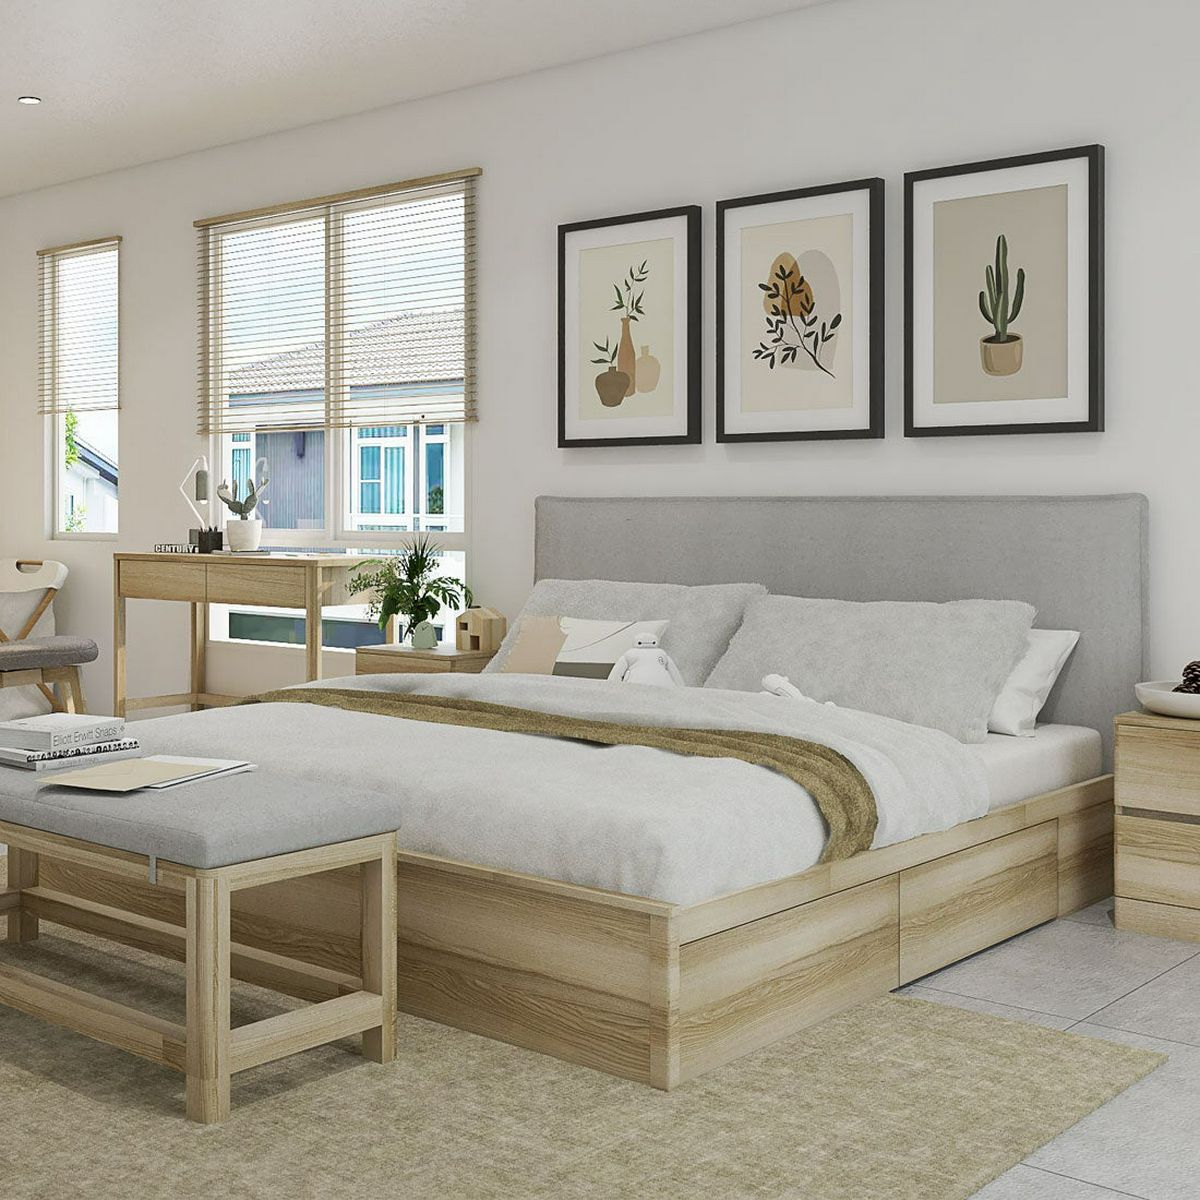 Bed Galleria เตียงนอนลิ้นชัก หัวเบาะ ฟุต รุ่น Timbur สีไม้อ่อน  (205x210x103 cm.)